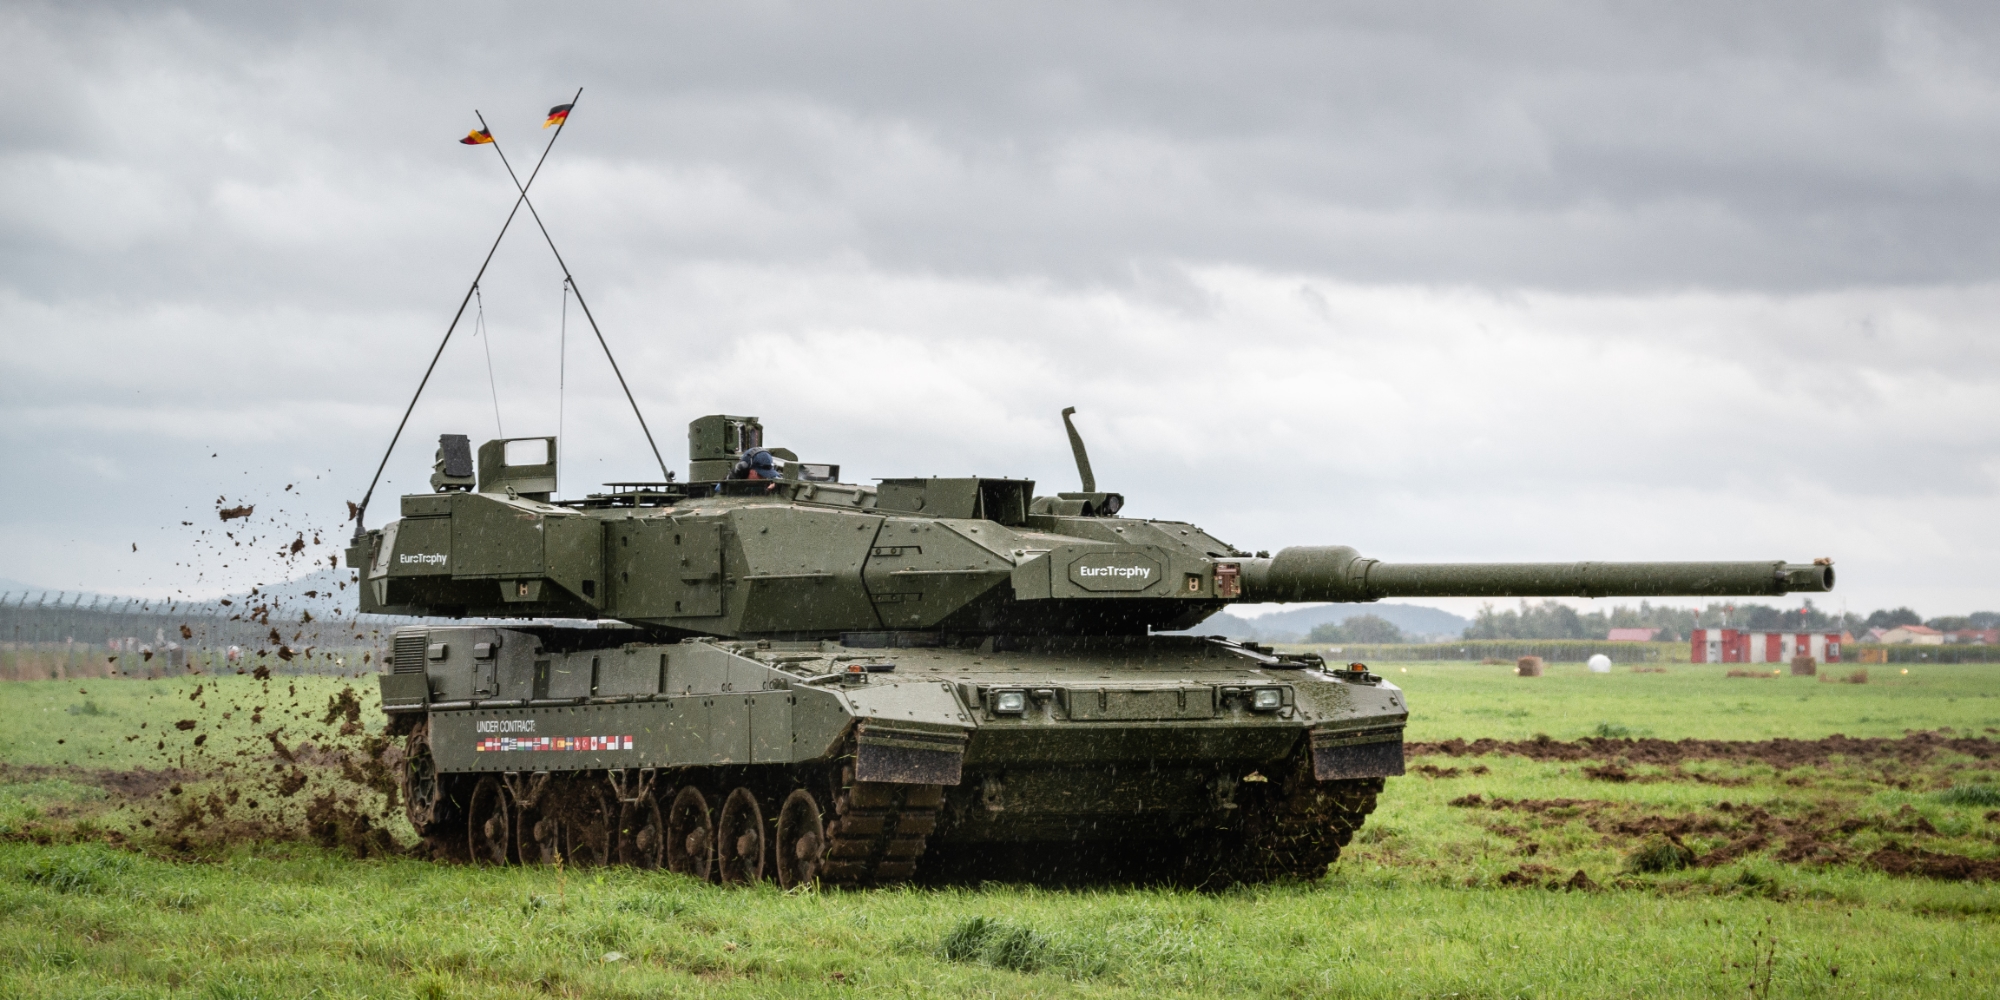 Pour remplacer l'Ariete : L'Italie veut acheter 250 chars modernes Leopard 2A7